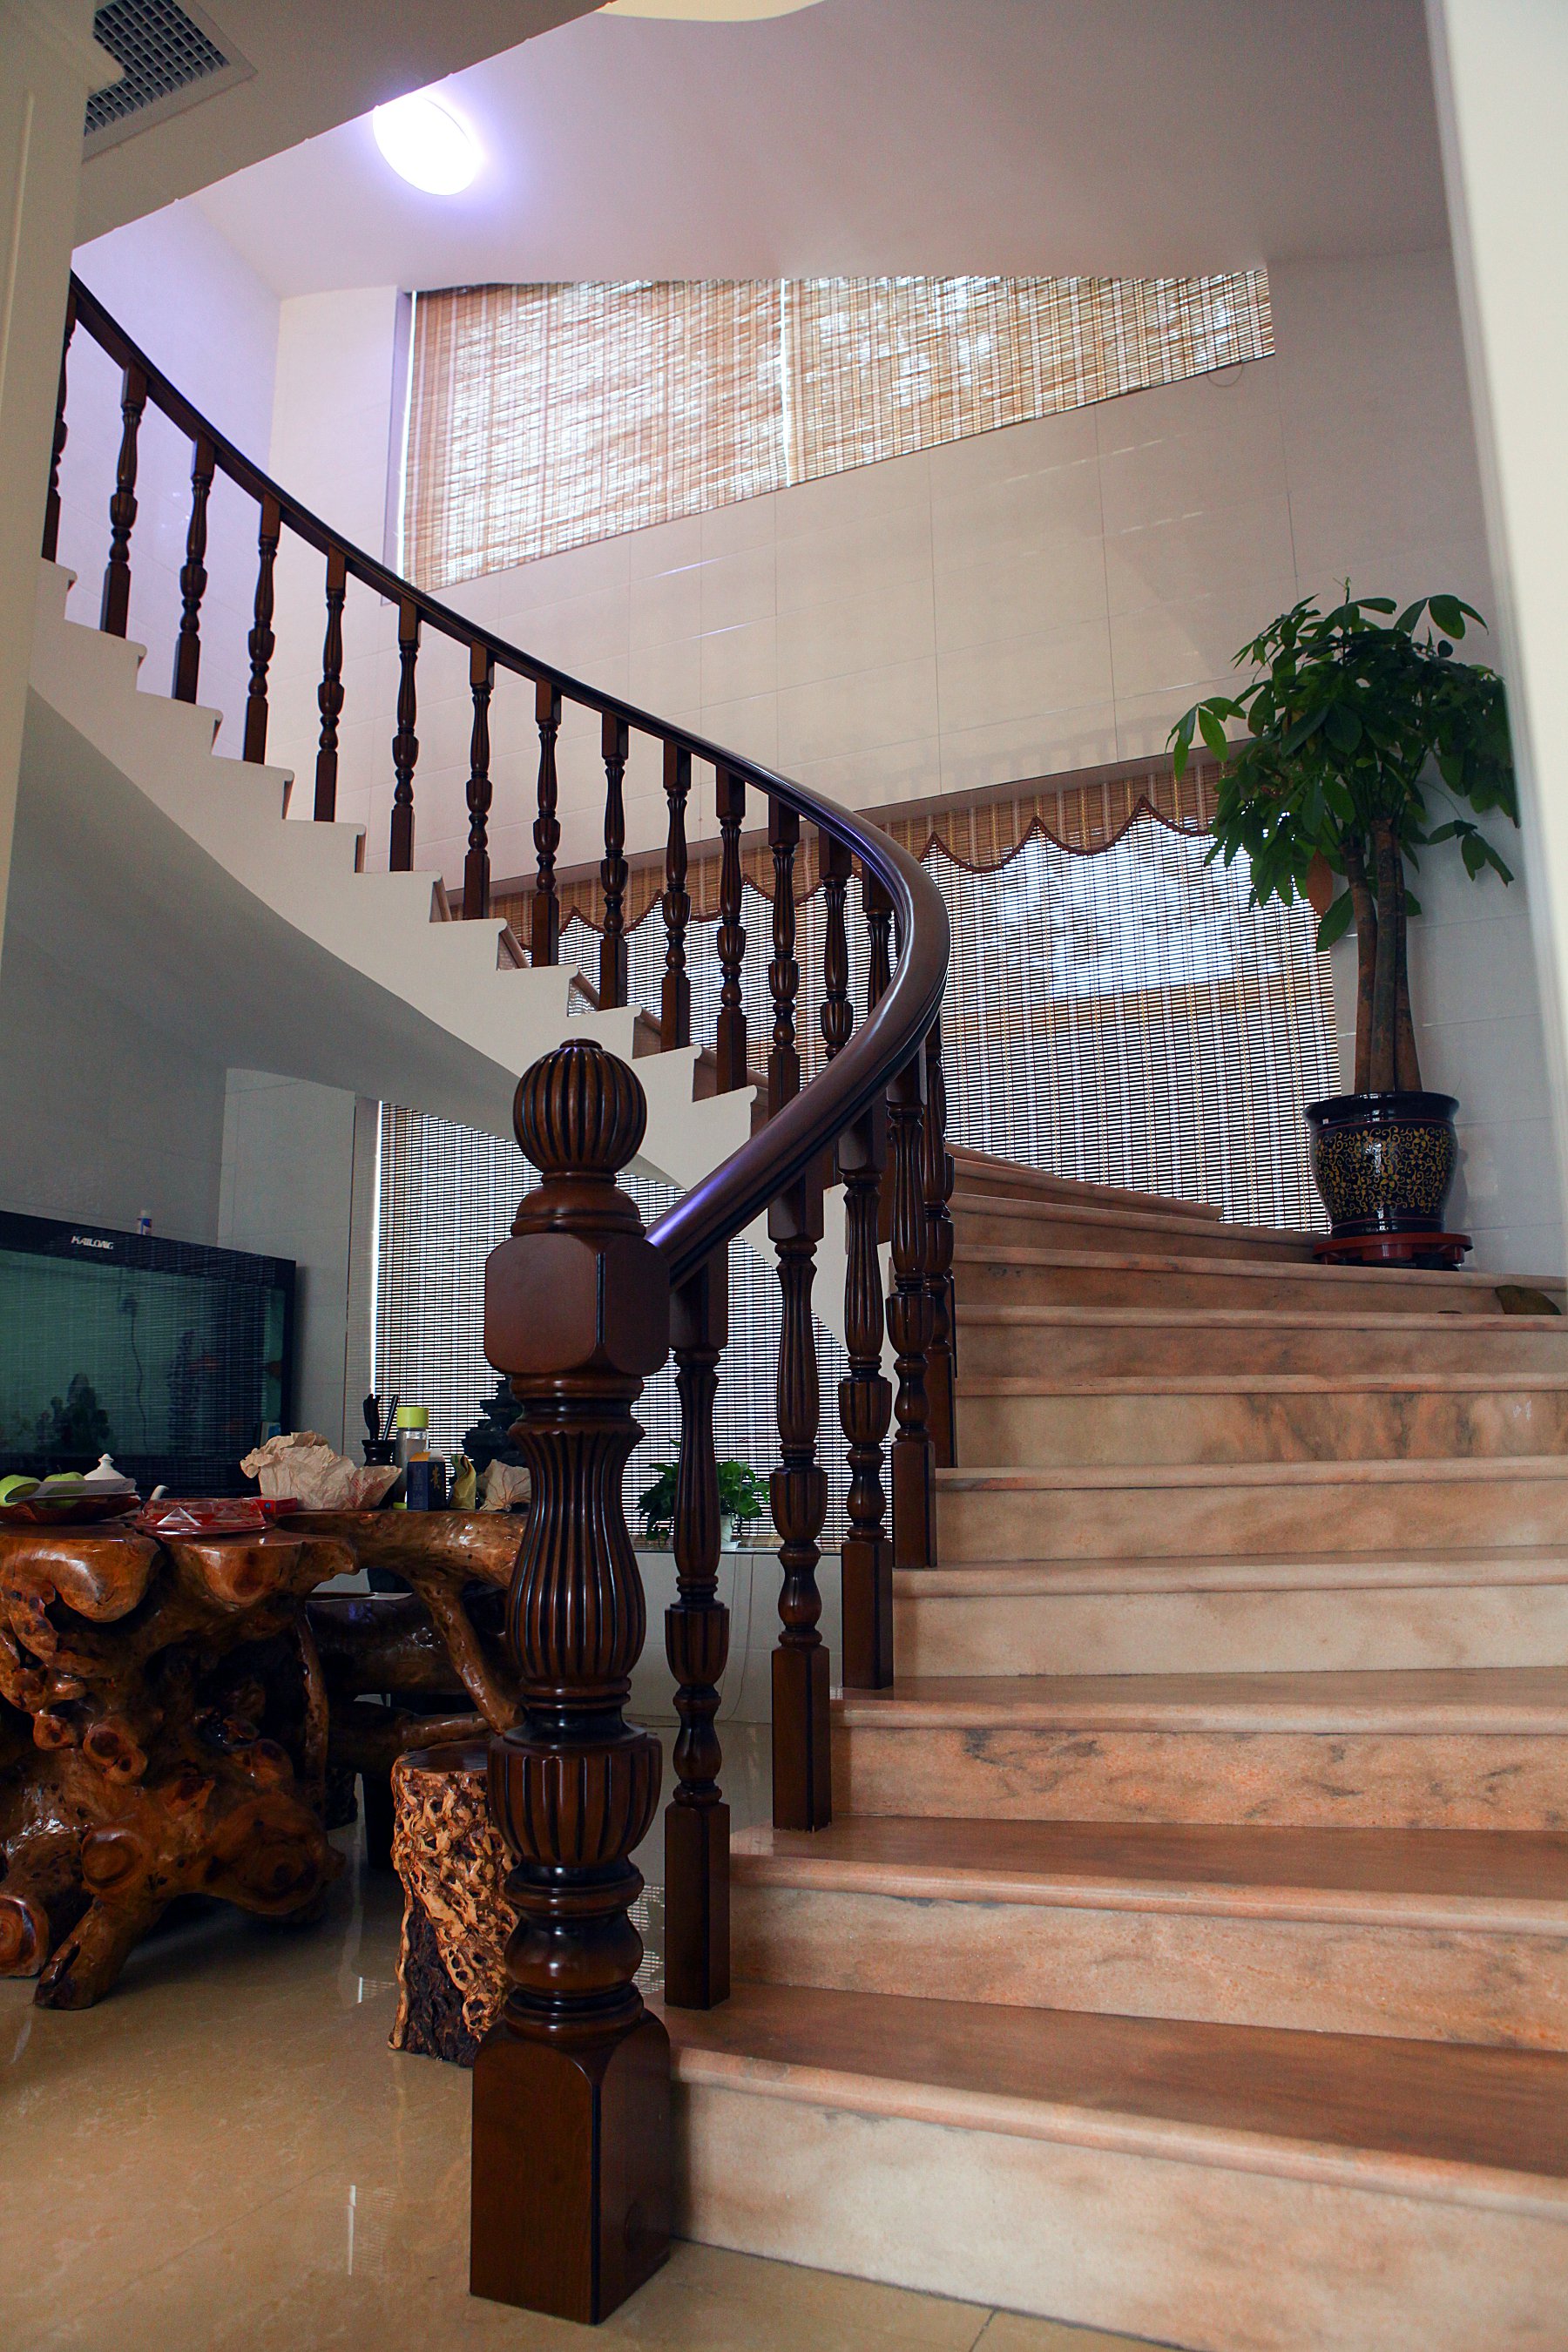 旋转楼梯直通三层,磅礴之势难以言表,楼梯间主要设置茶座,搭配绿植和